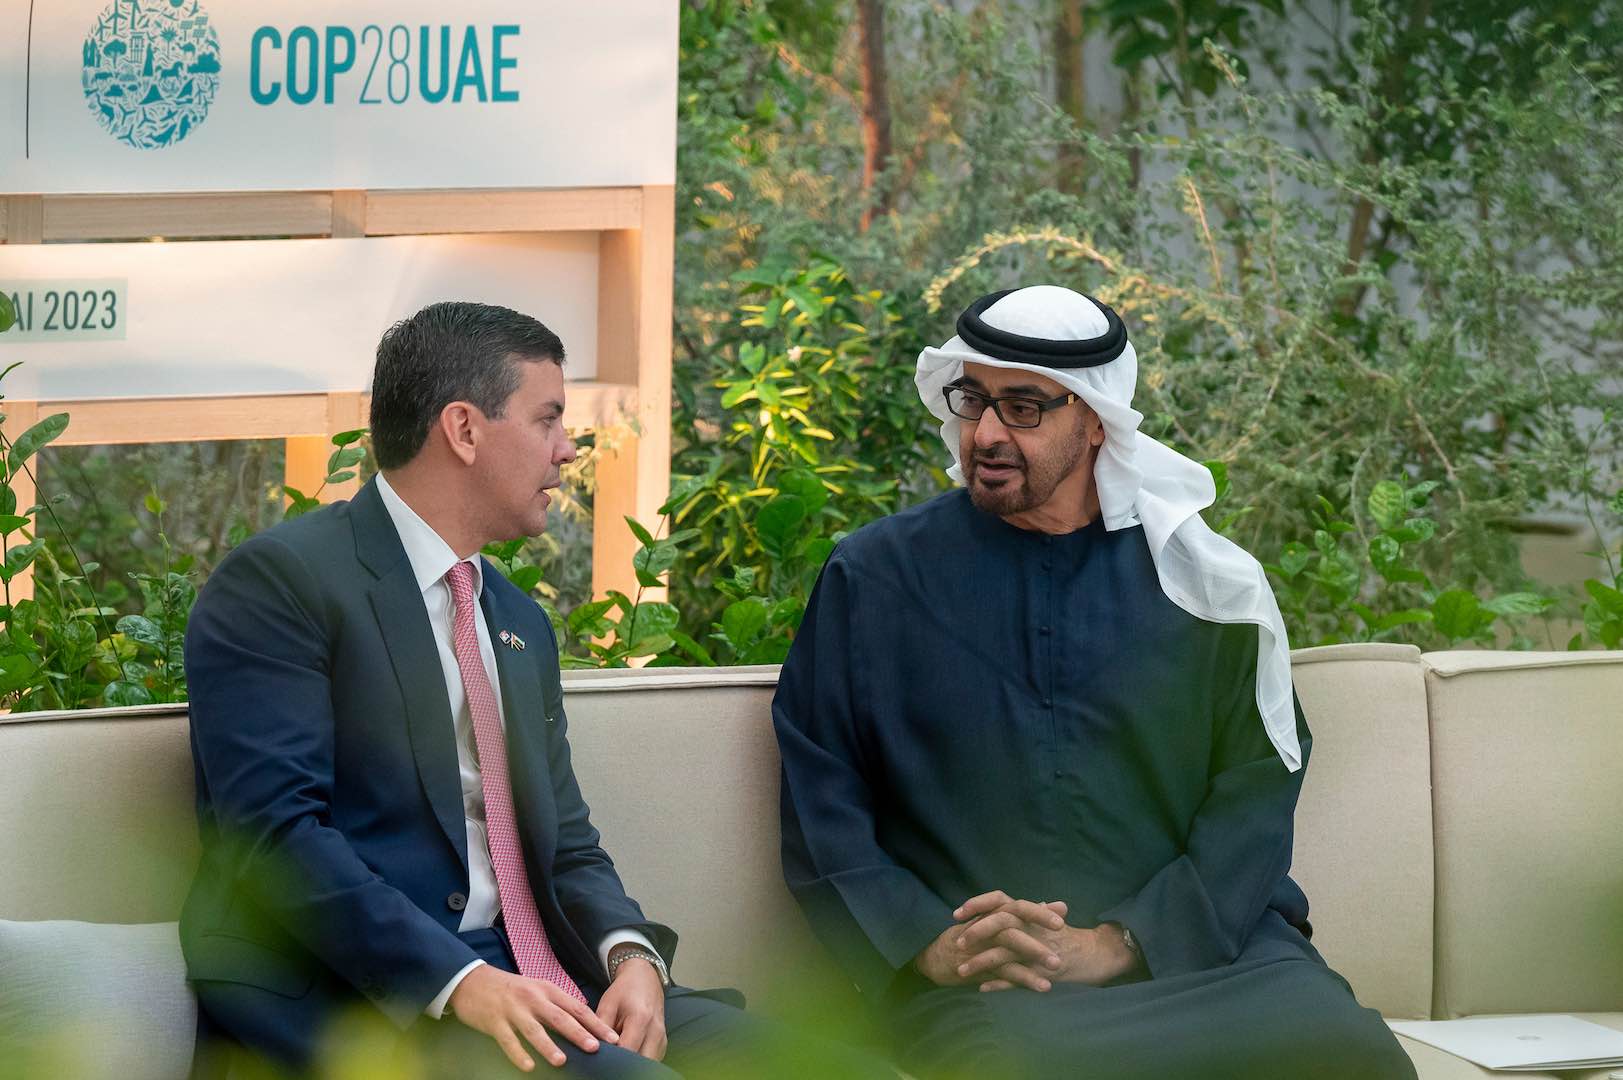 رئيس دولة الإمارات يعقد لقاءات مع قادة الوفود المشاركة في كوب 28 ويرحب بالعالم في مؤتمر المناخ